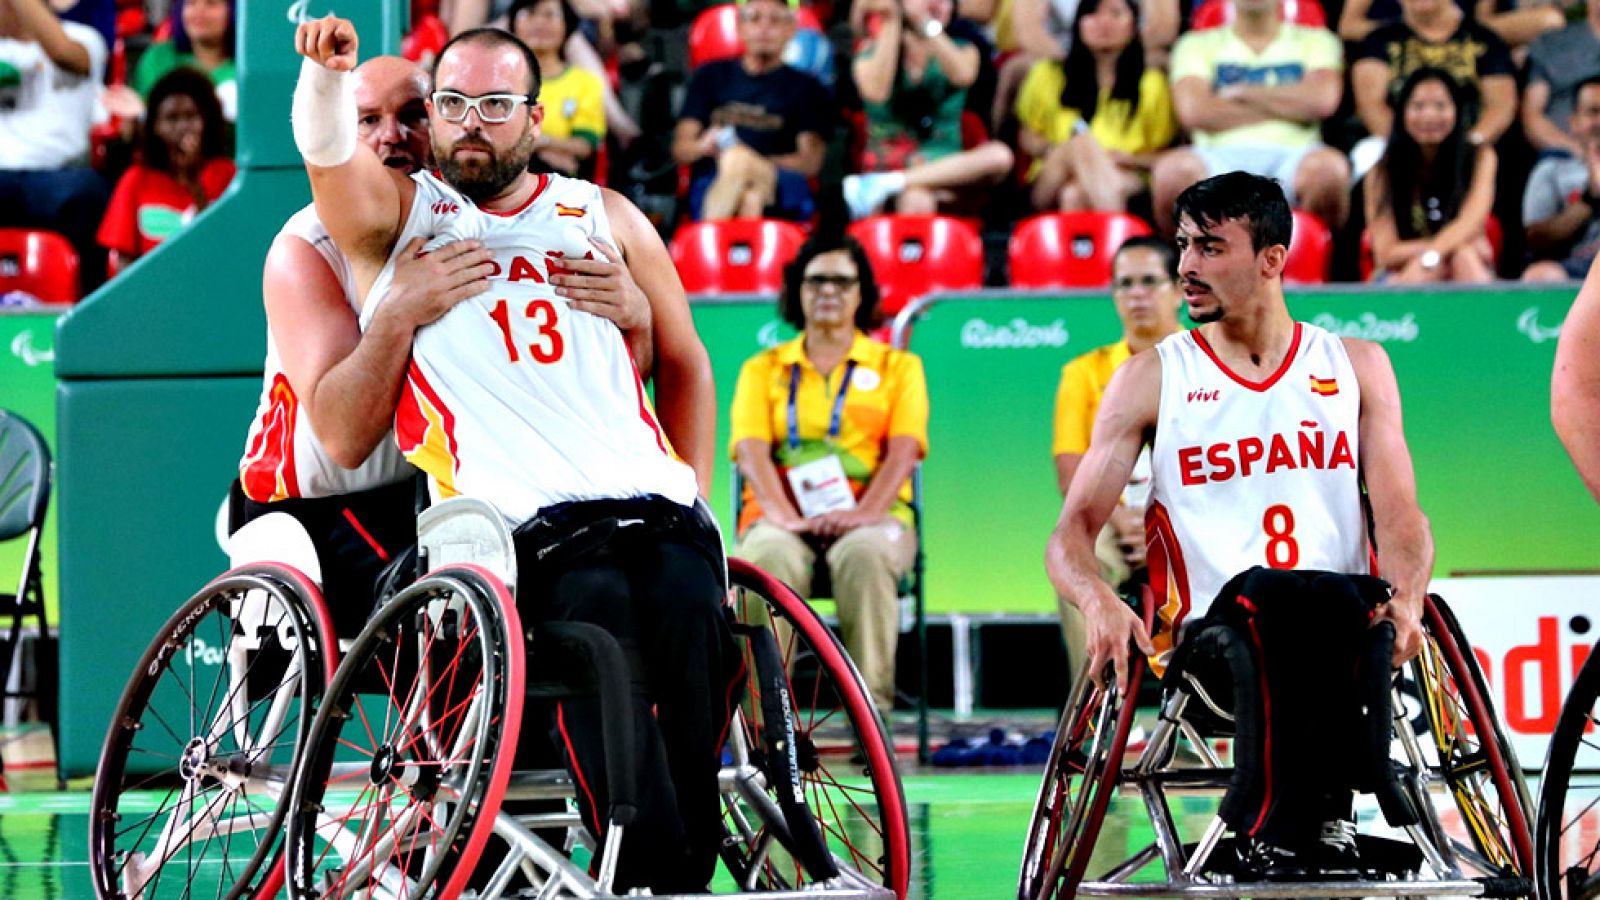 La selección española de baloncesto en silla de ruedas se clasificó para las semifinales de los Juegos Paralímpicos de Río de Janeiro, al imponerse a Alemania (70-66) en el Arena Olímpico, en un partido en el que no logró ponerse por delante en el ma